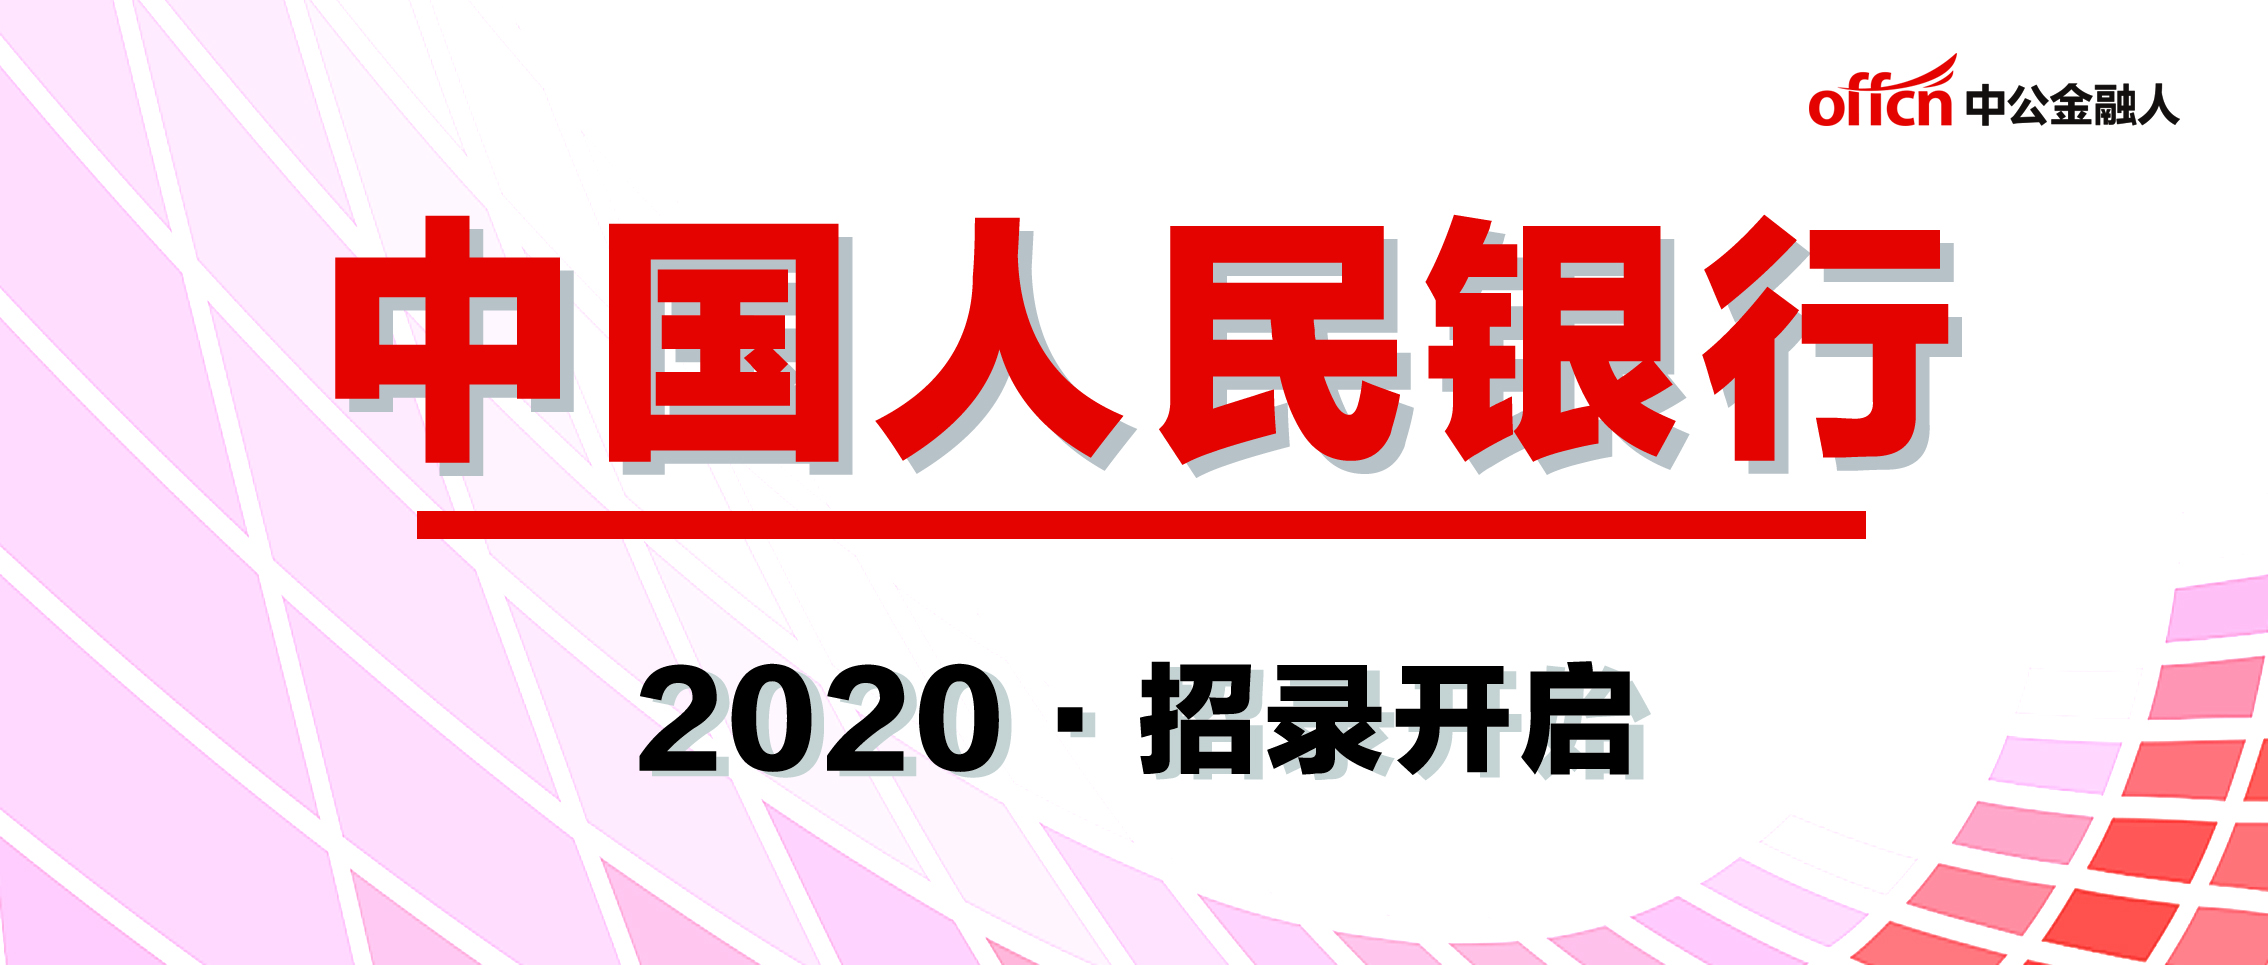 2020中国人民银行招聘考试,招聘岗位